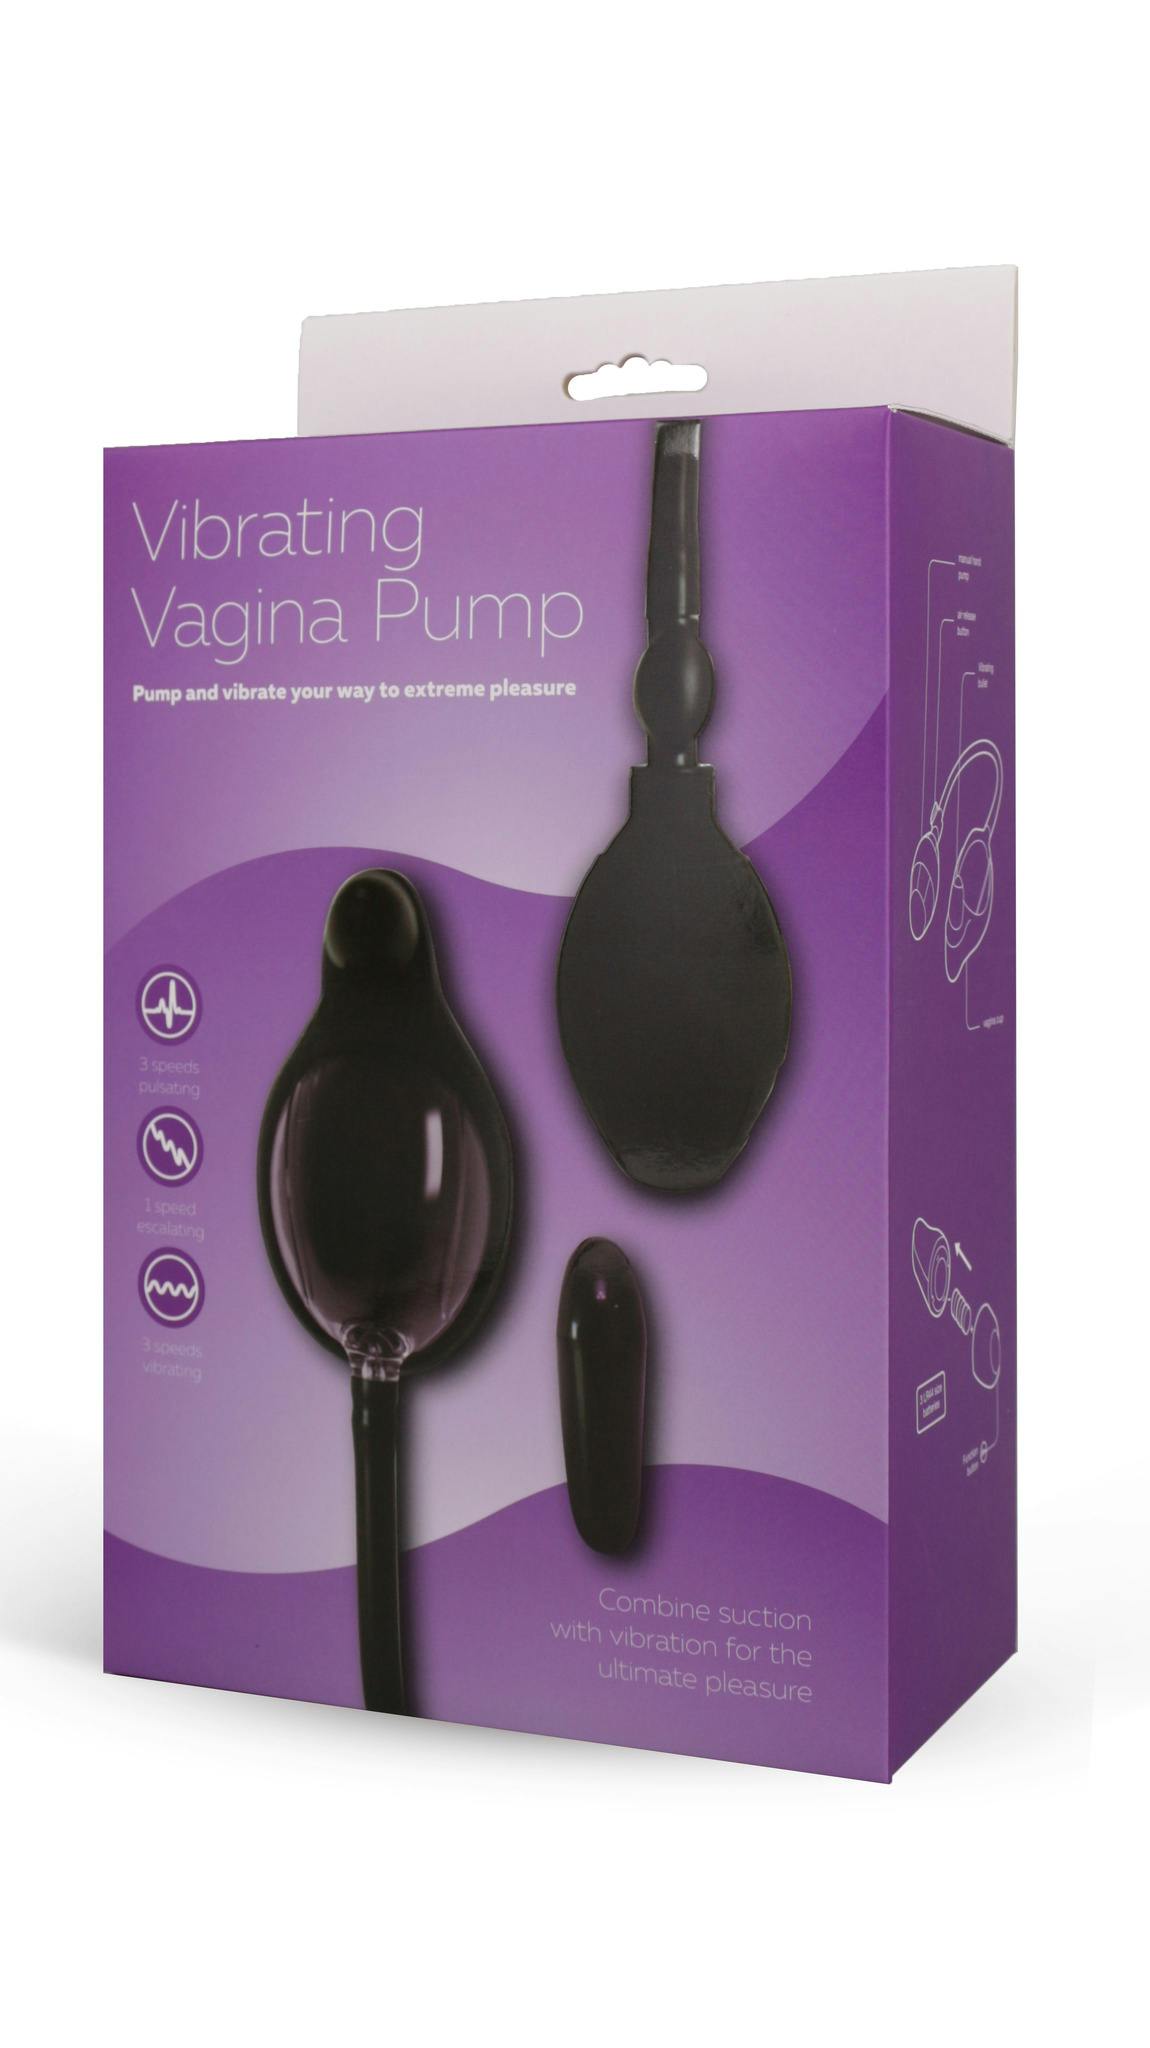 Vibrating vagina pump